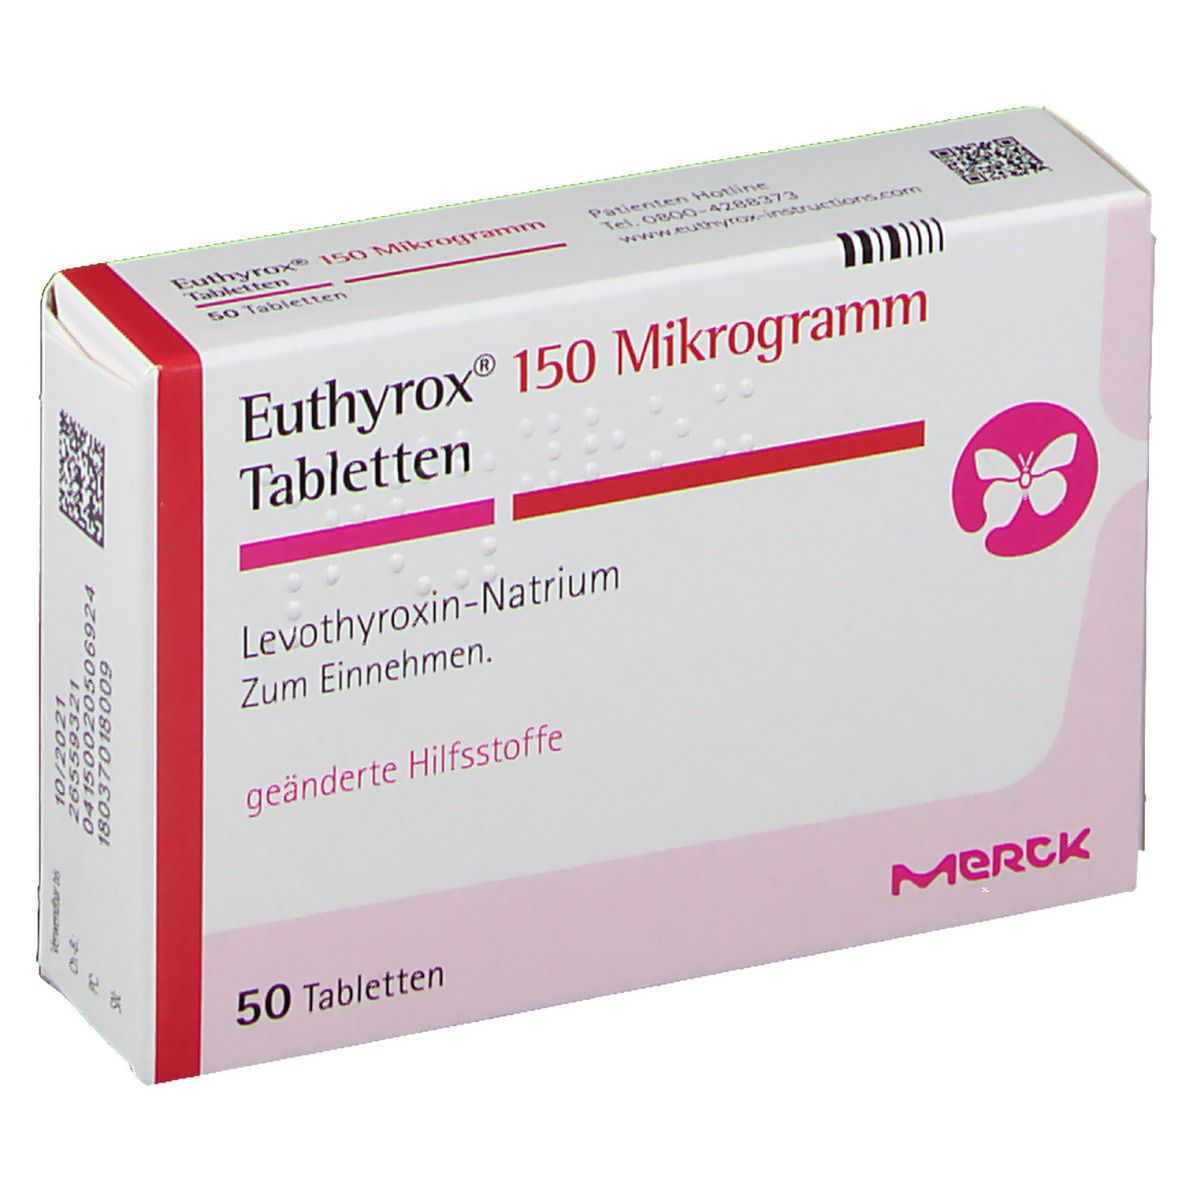 Euthyrox® 150 µg